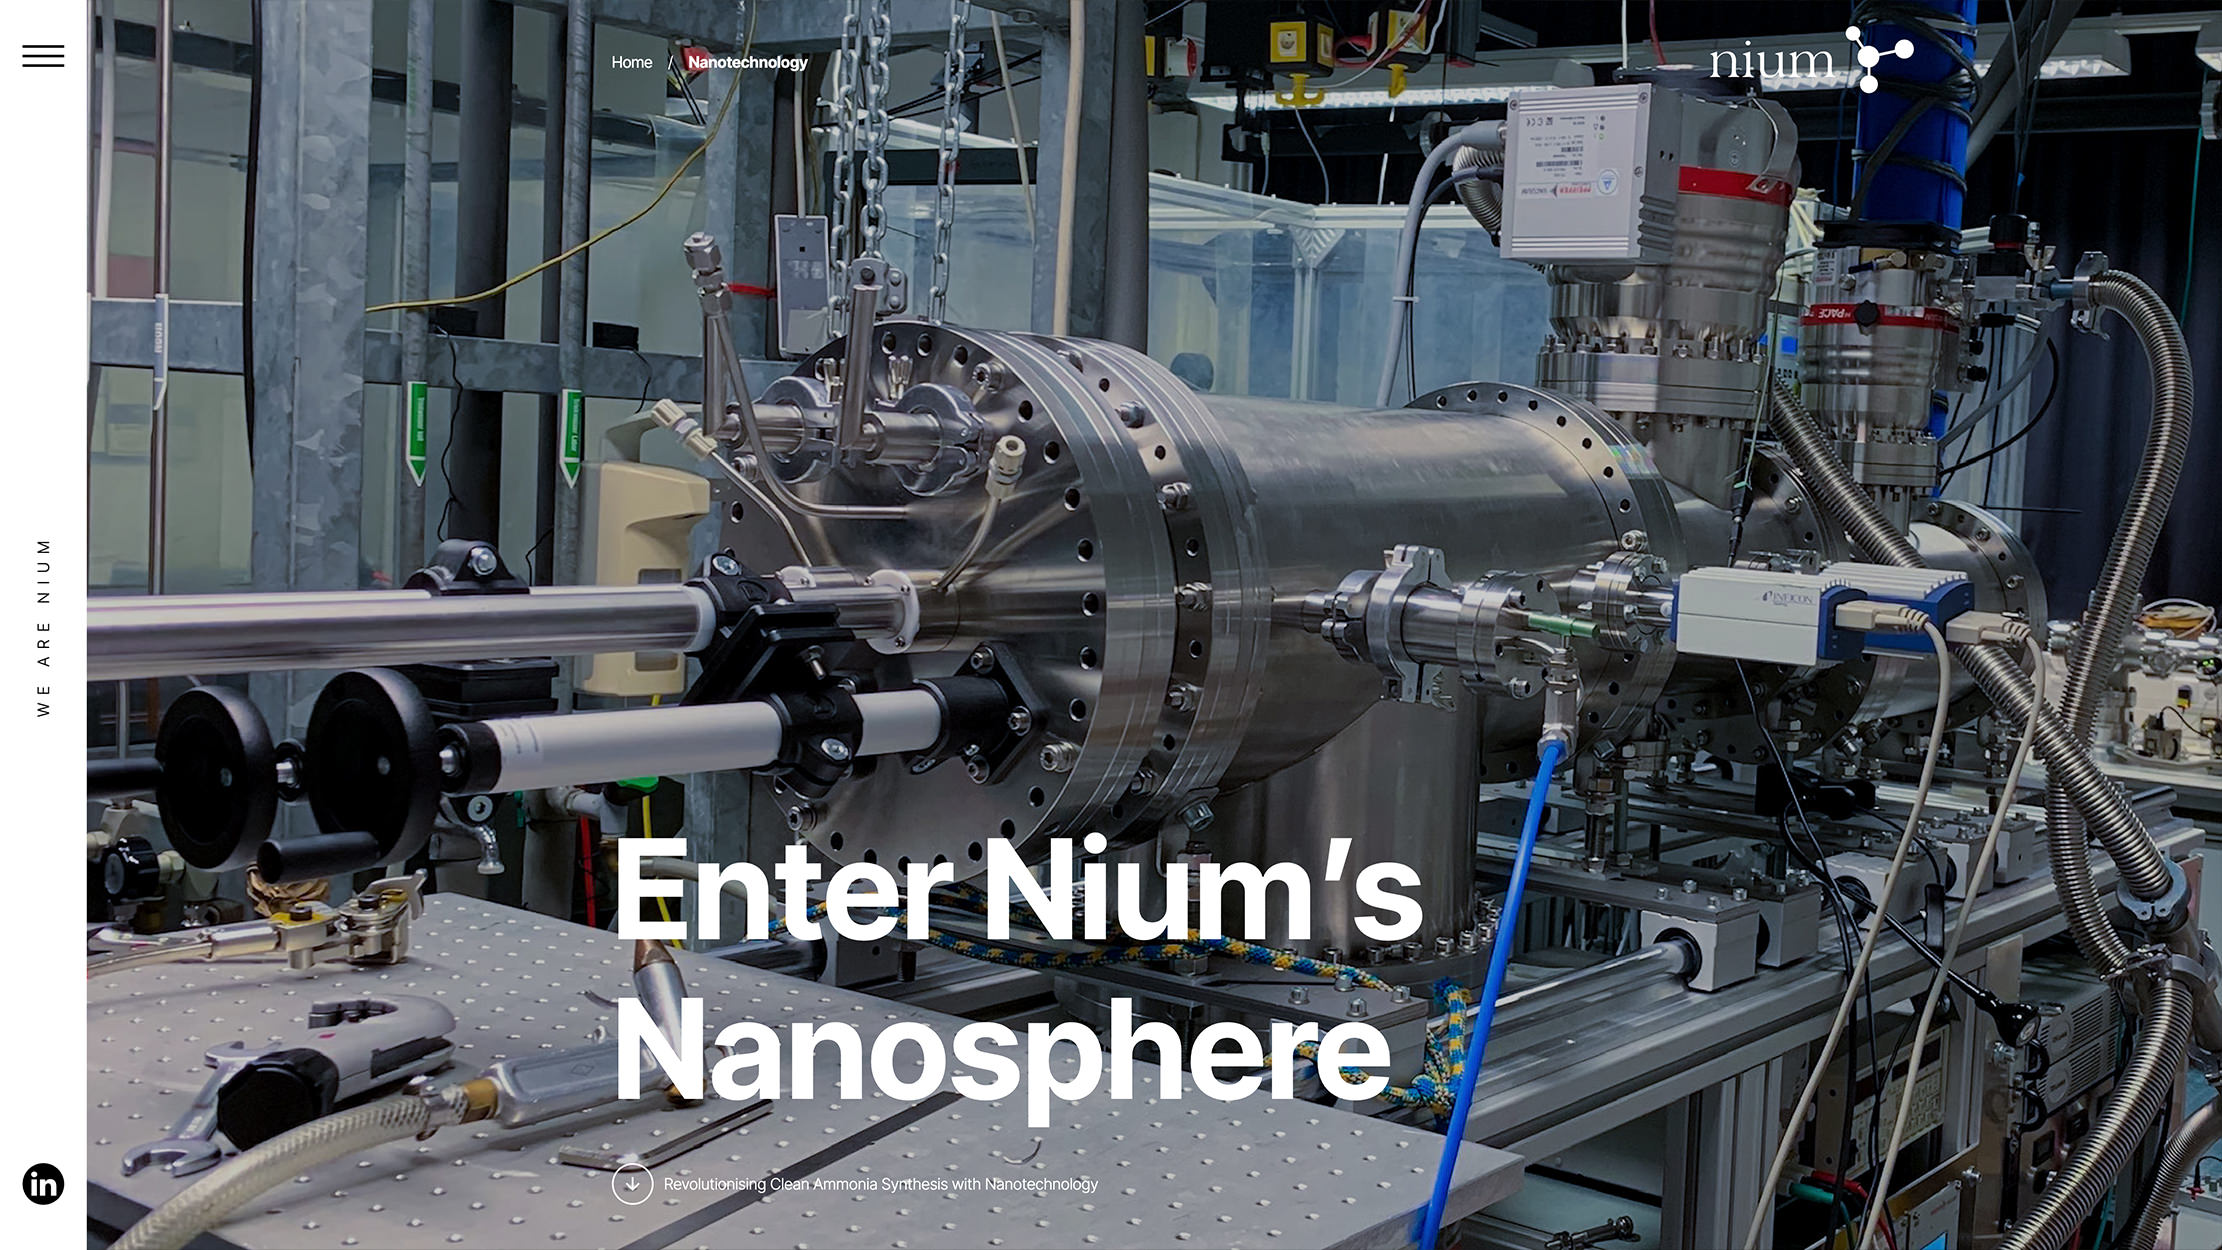 Nium Clean Ammonia | Fuga Design